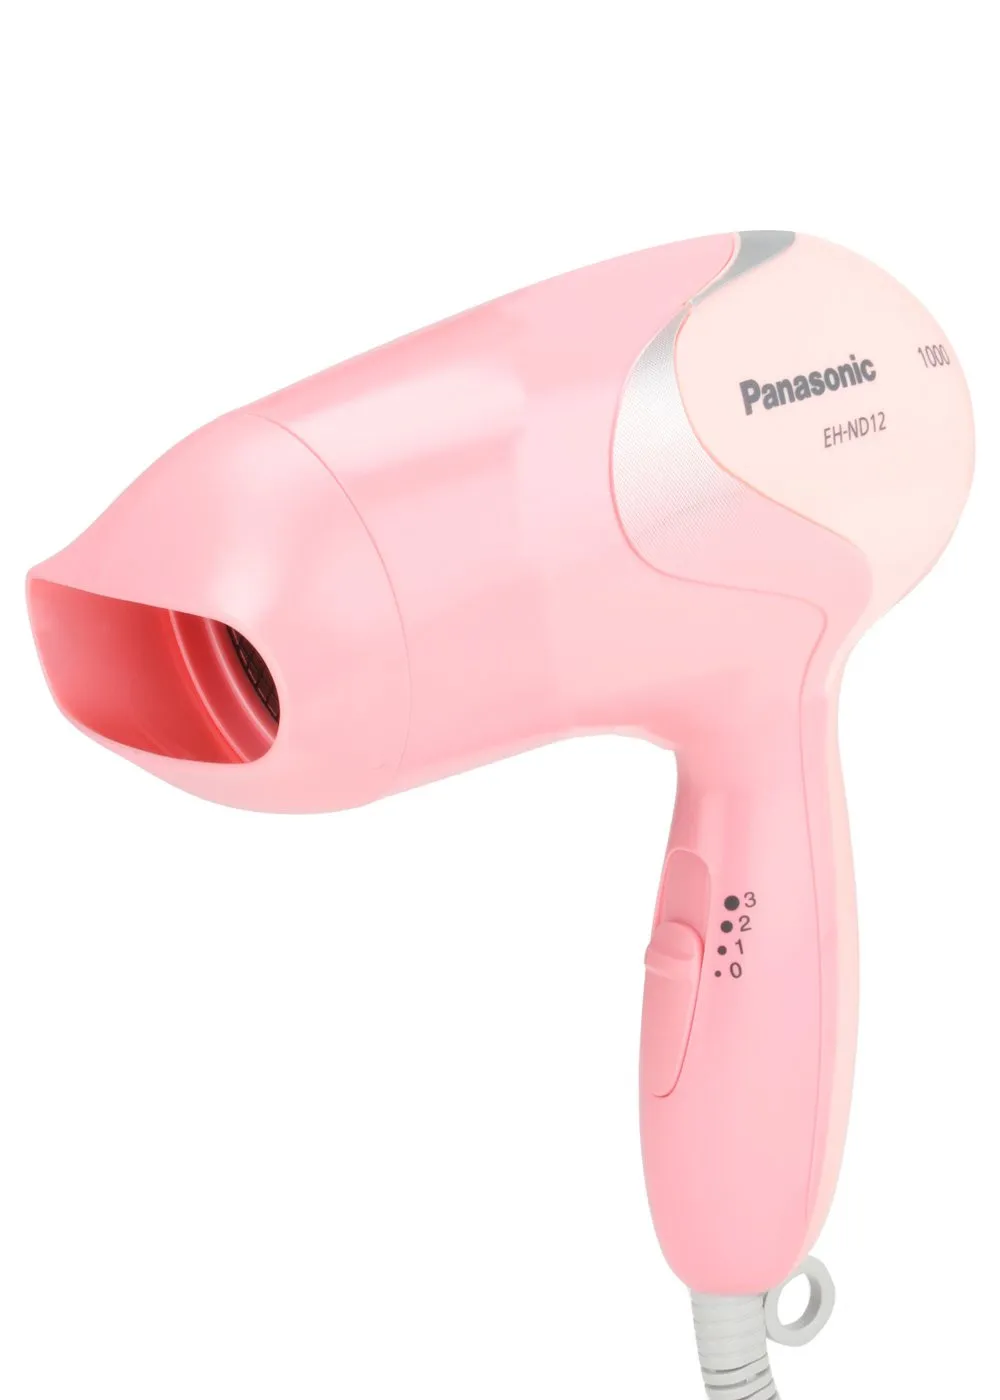 Фен Panasonic EH-ND12 охлаждением воздуха и режимом Turbo Dry(Розовый)#1